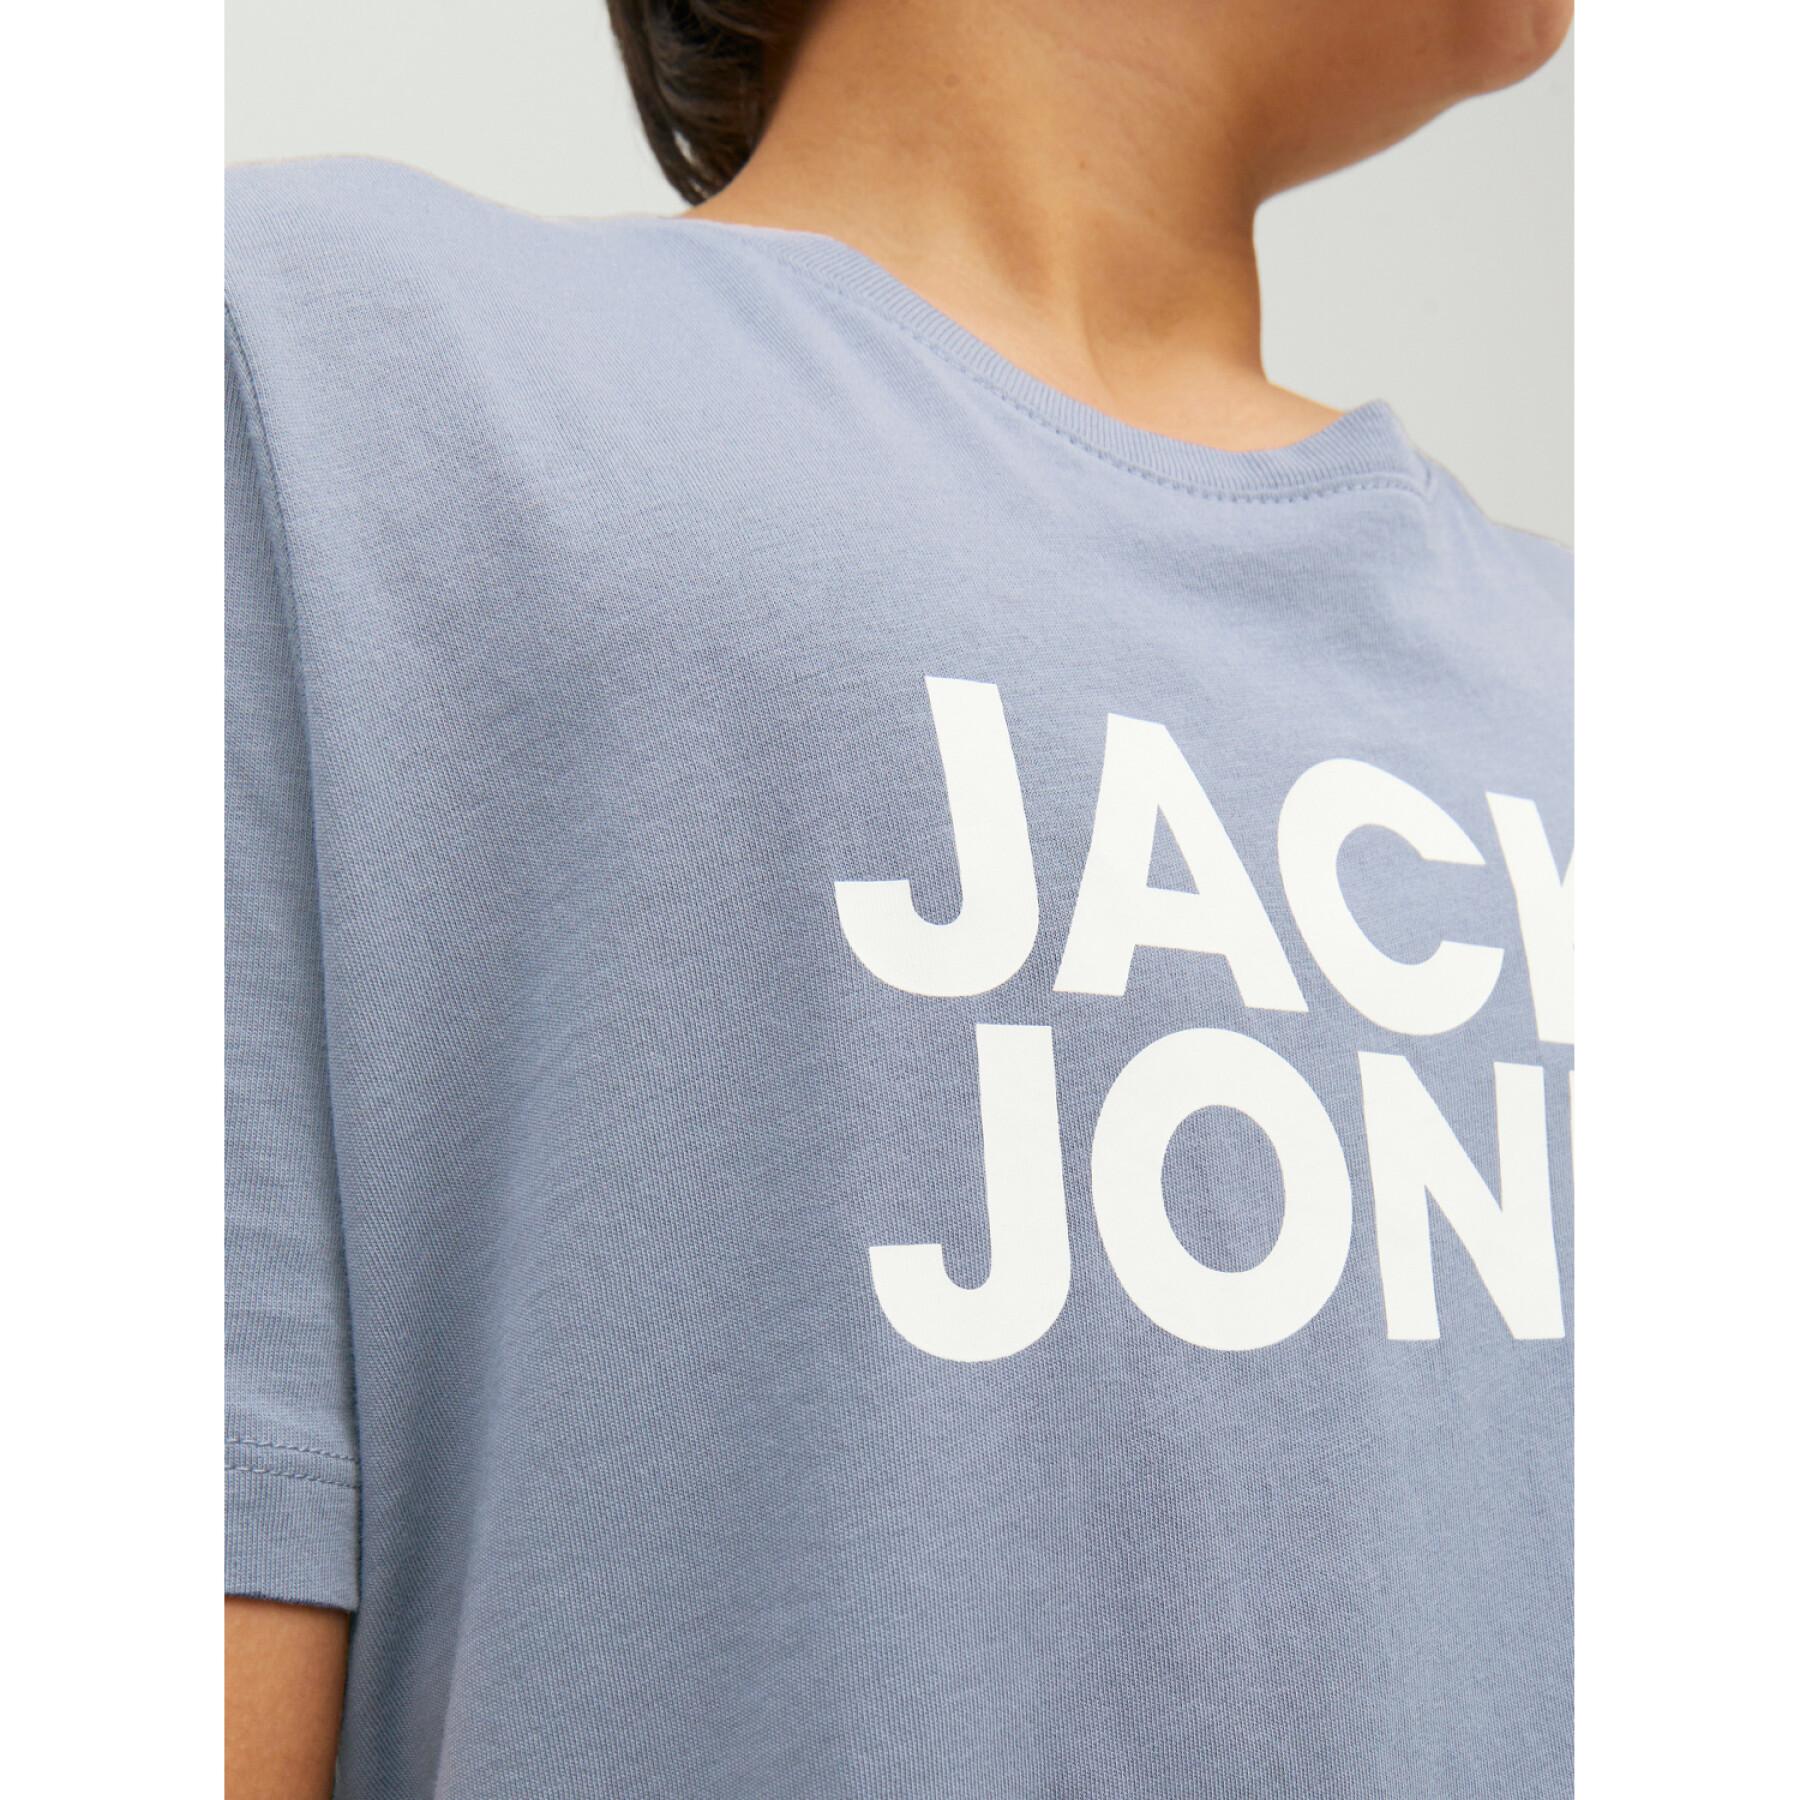 Koszulka dla dzieci Jack & Jones Corp Logo